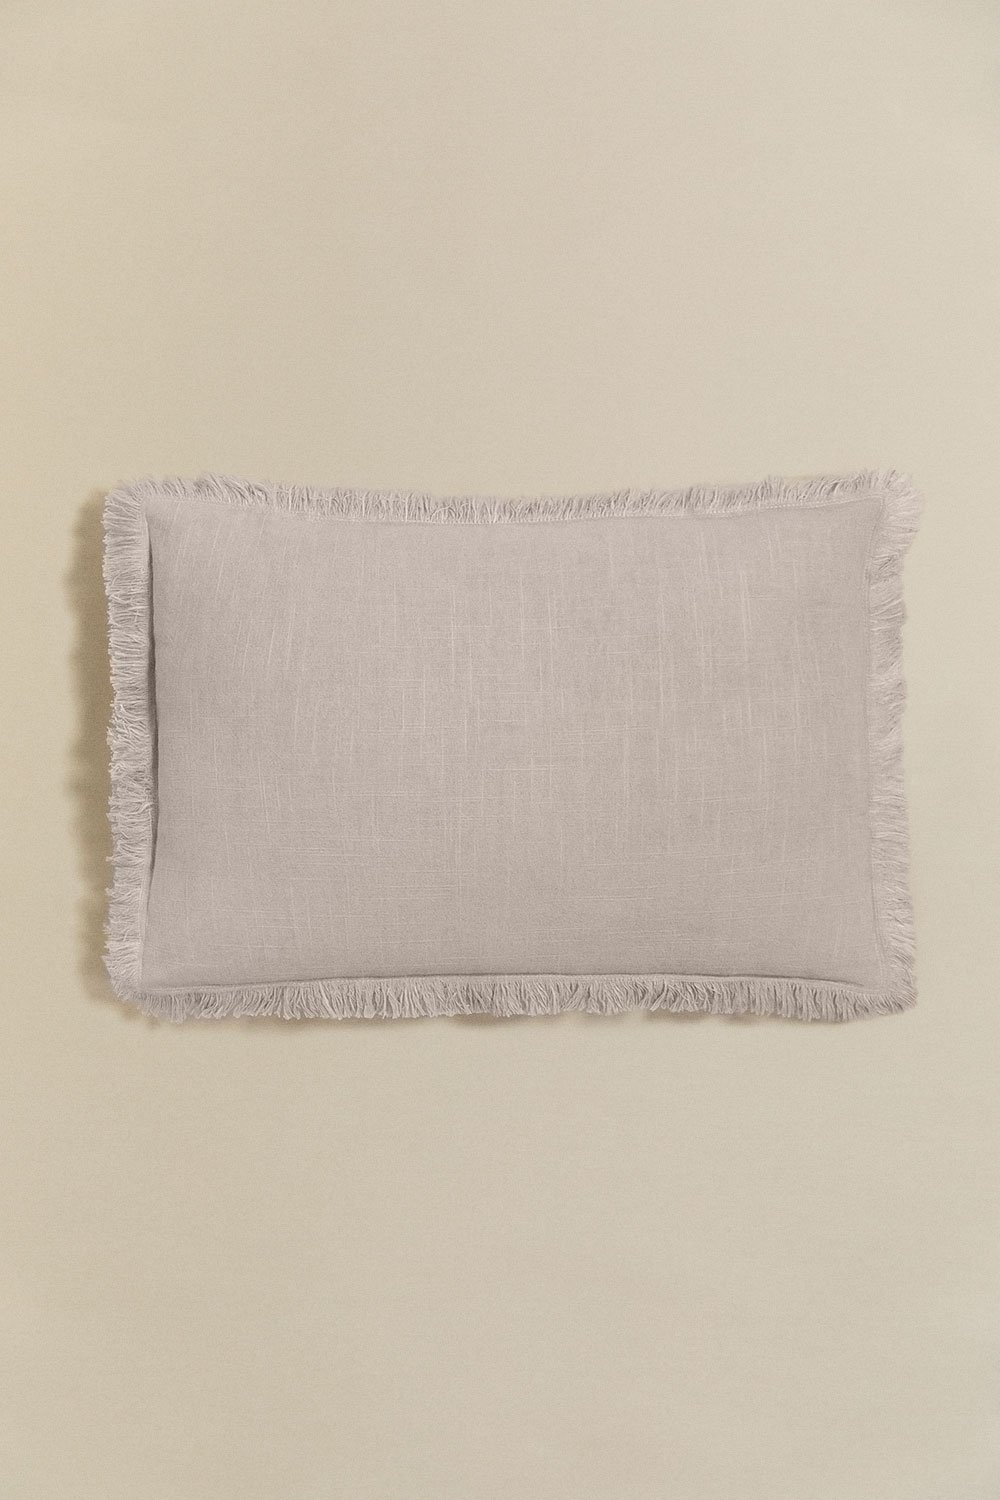 Cuscino rettangolare in cotone (30x50 cm) Nedeliya, immagine della galleria 1